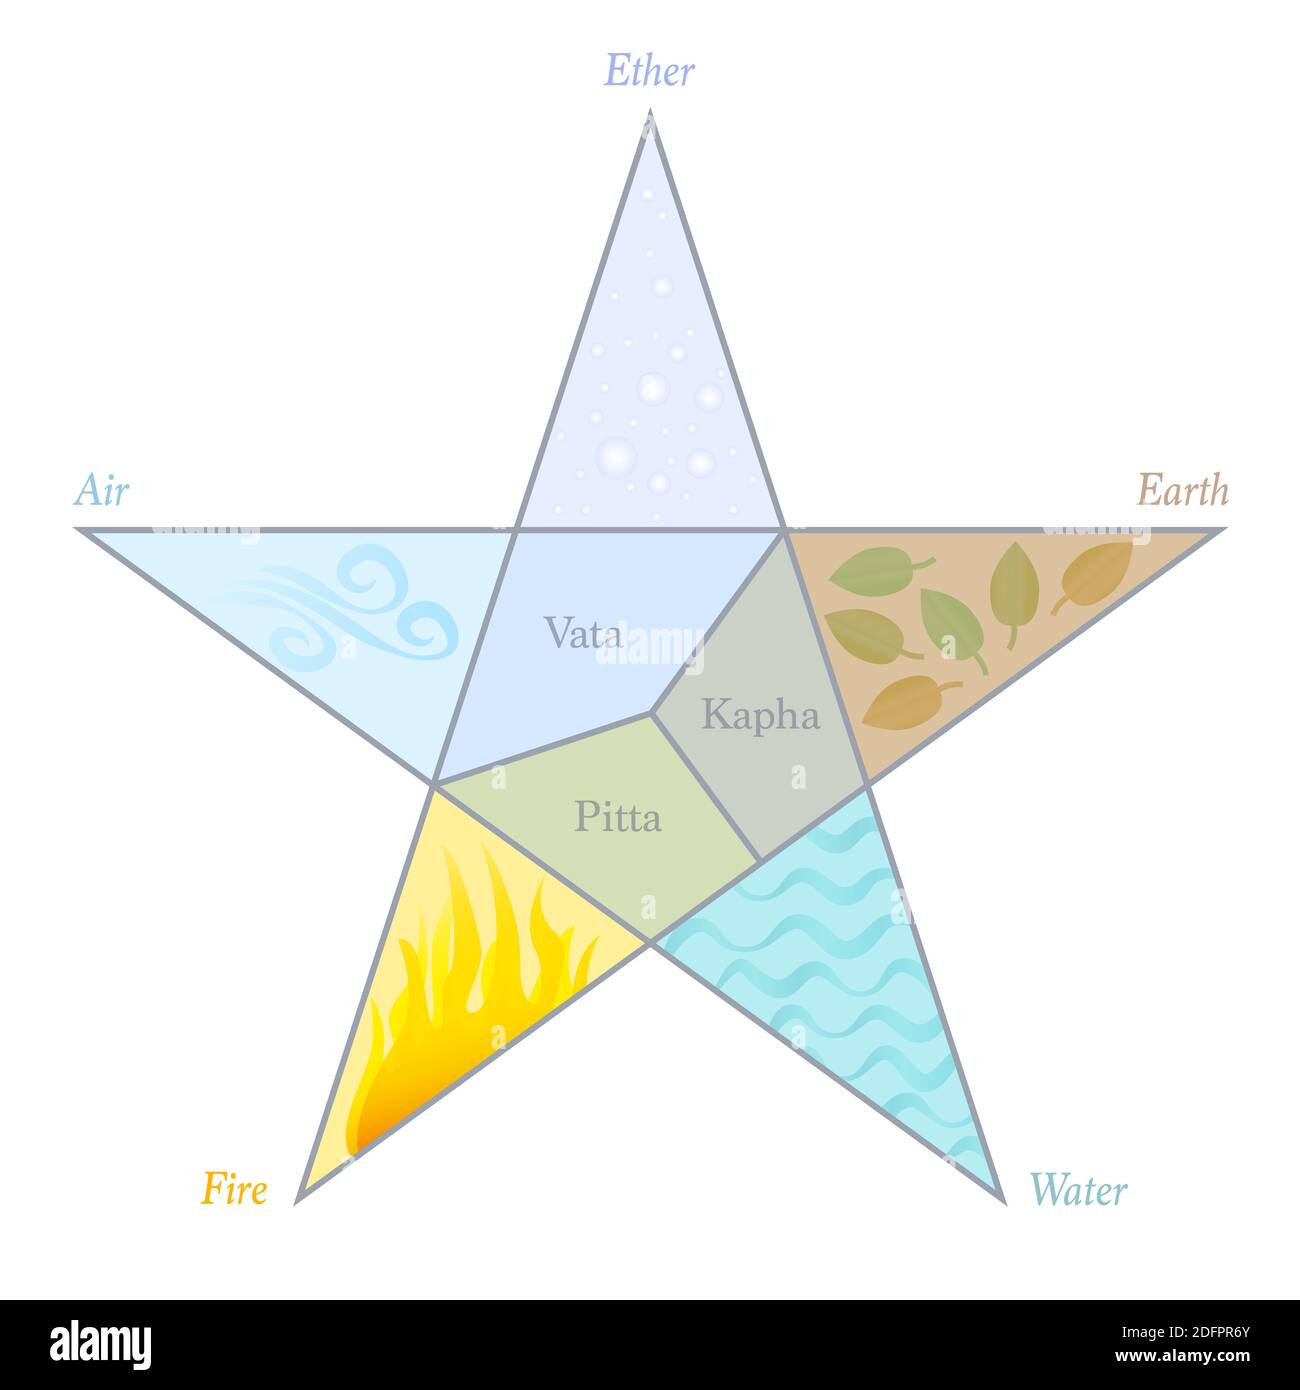 Dosha ed elementi pentagramma. Simboli ayurvedici con nomi e posizione in un simbolo a stella. Vata, Pitta, Kapha - etere, aria, fuoco, acqua, Terra. Foto Stock